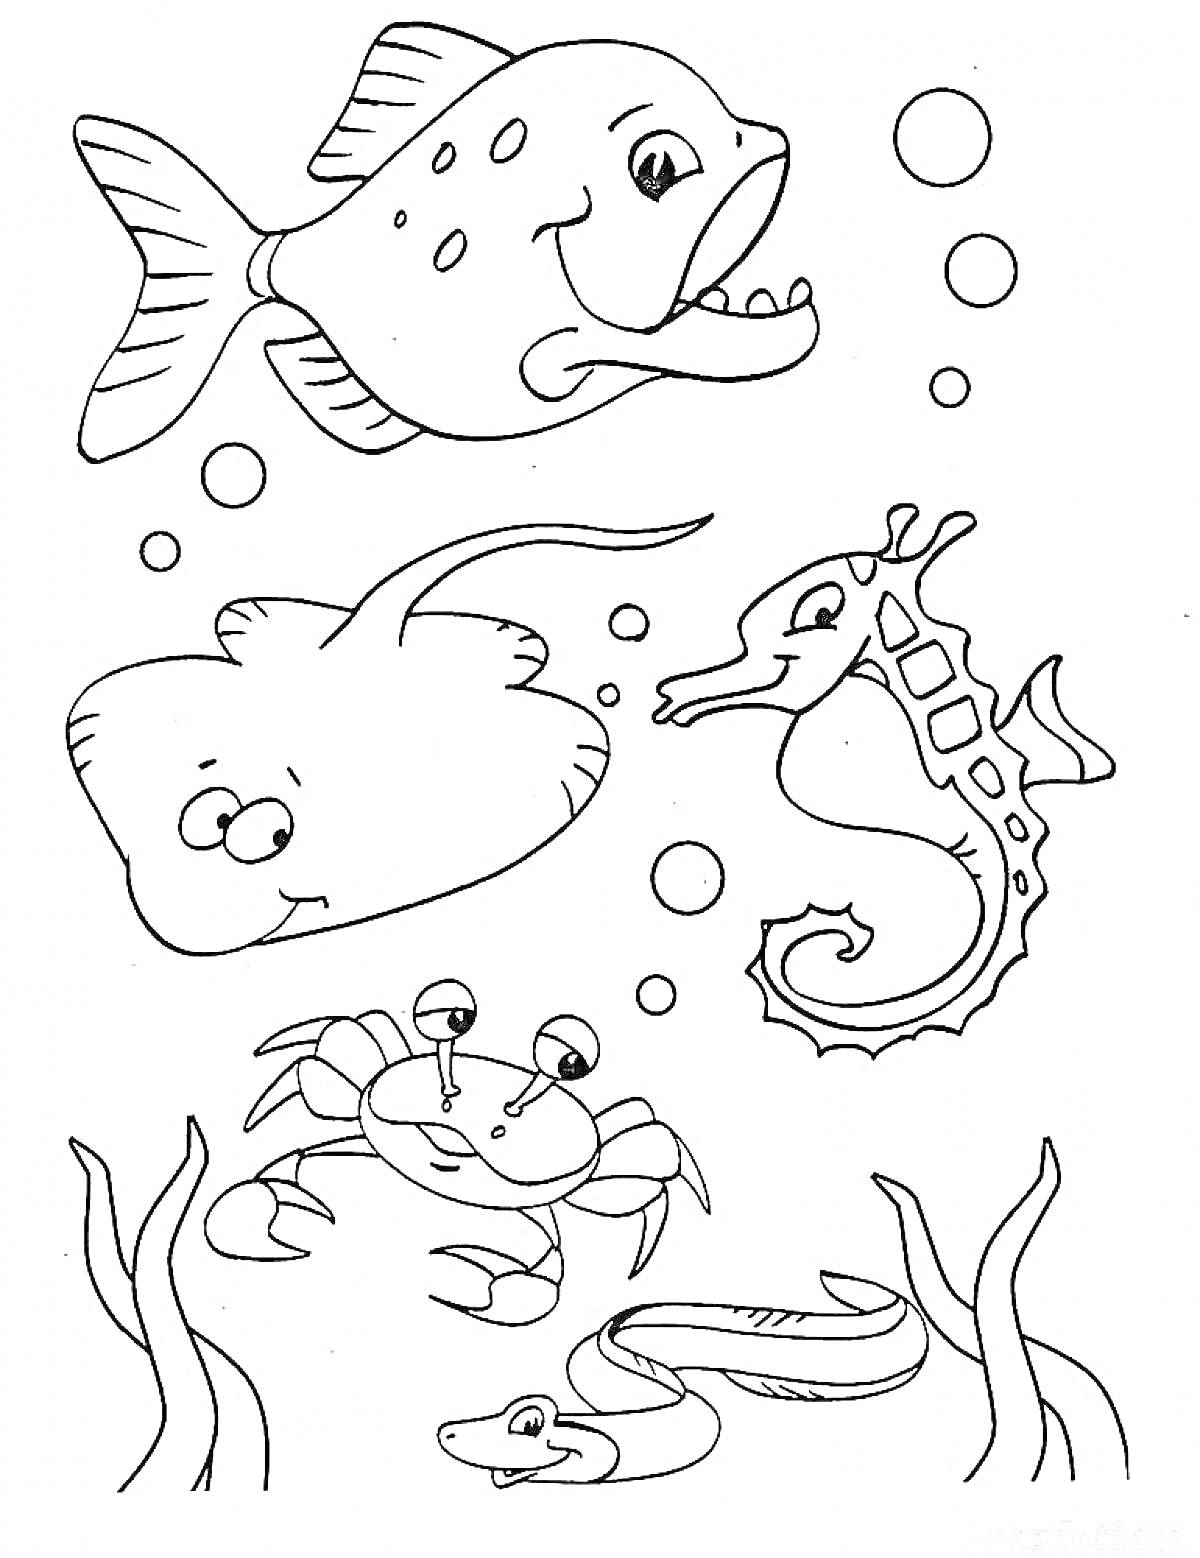 Рыба, скат, морской конек, краб, угорь, водоросли и пузыри